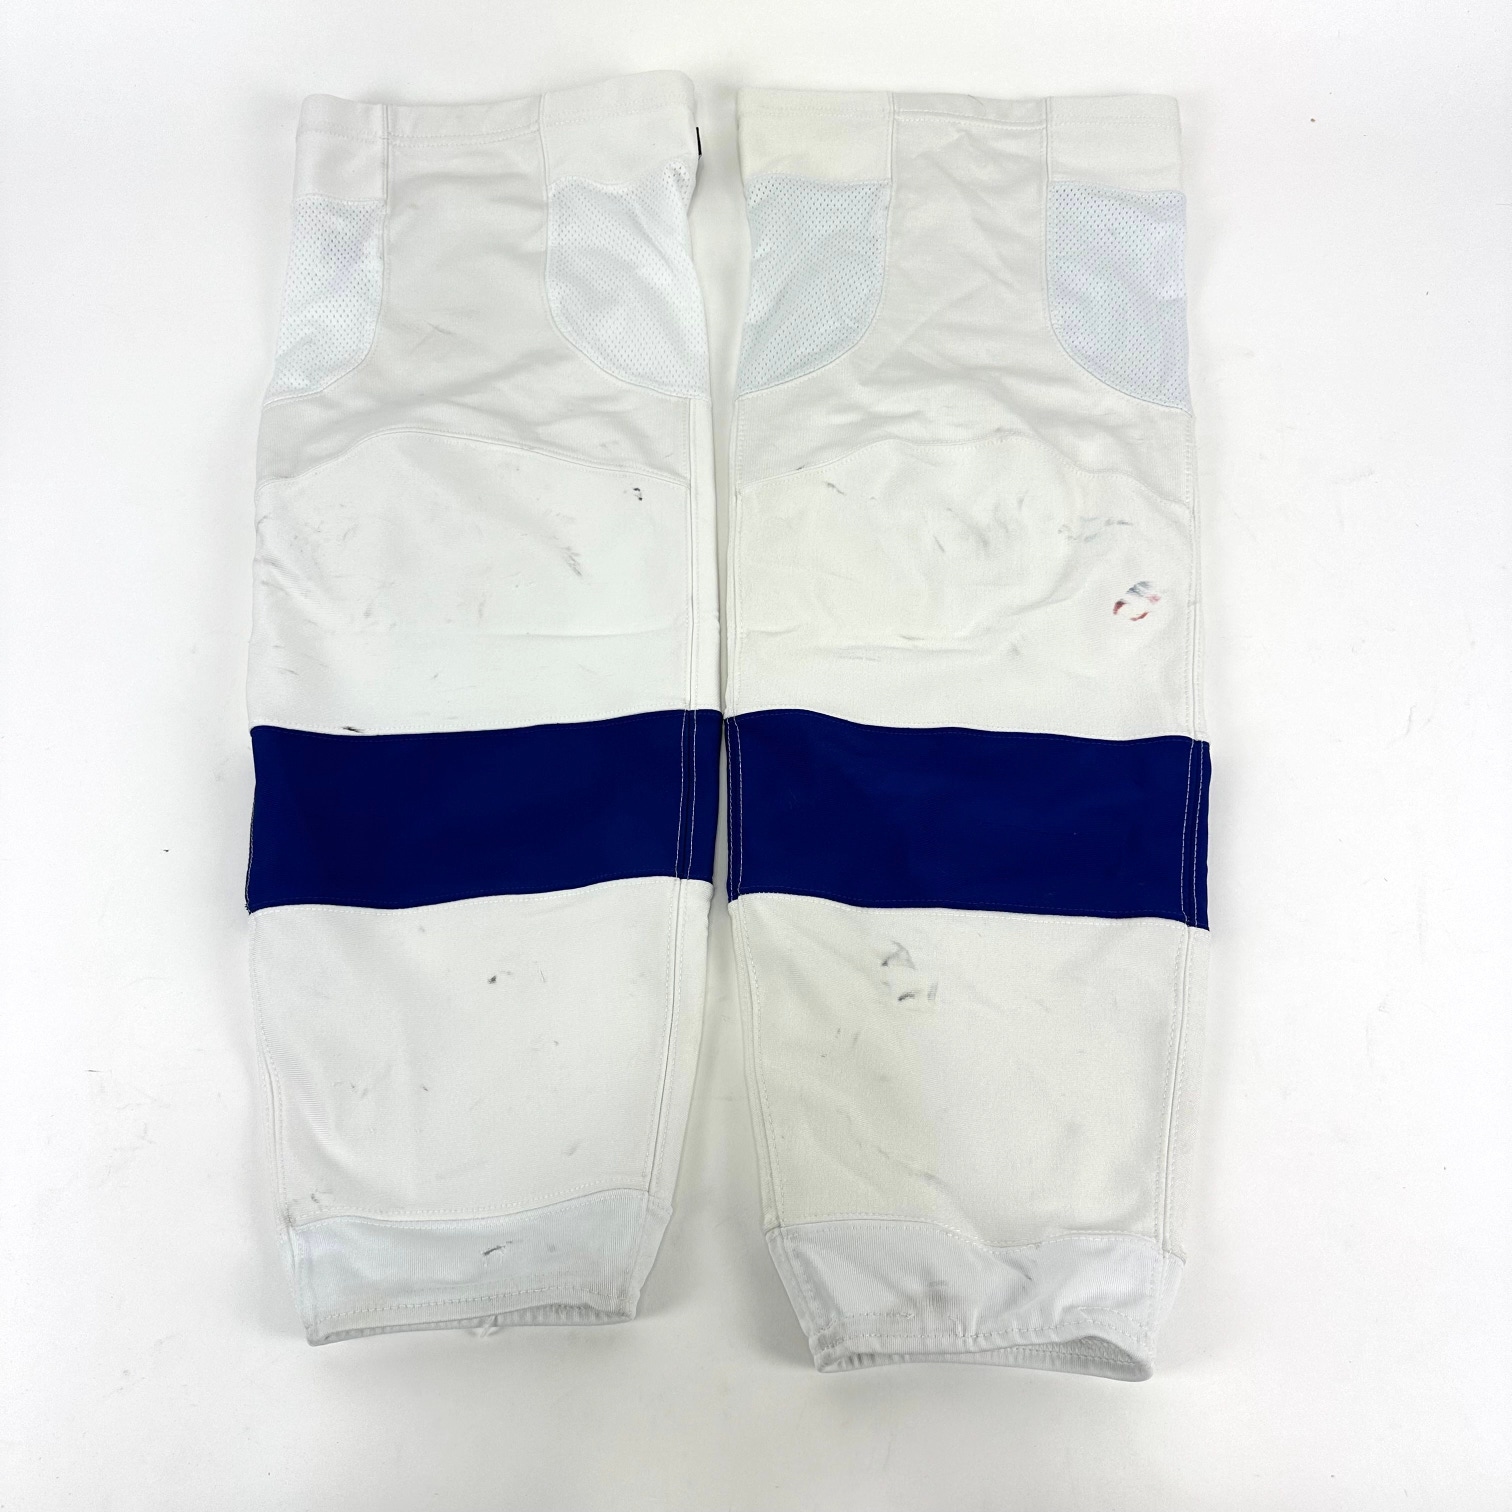 Used - Tampa Bay Lightning Game Socks - White - Adidas XL+